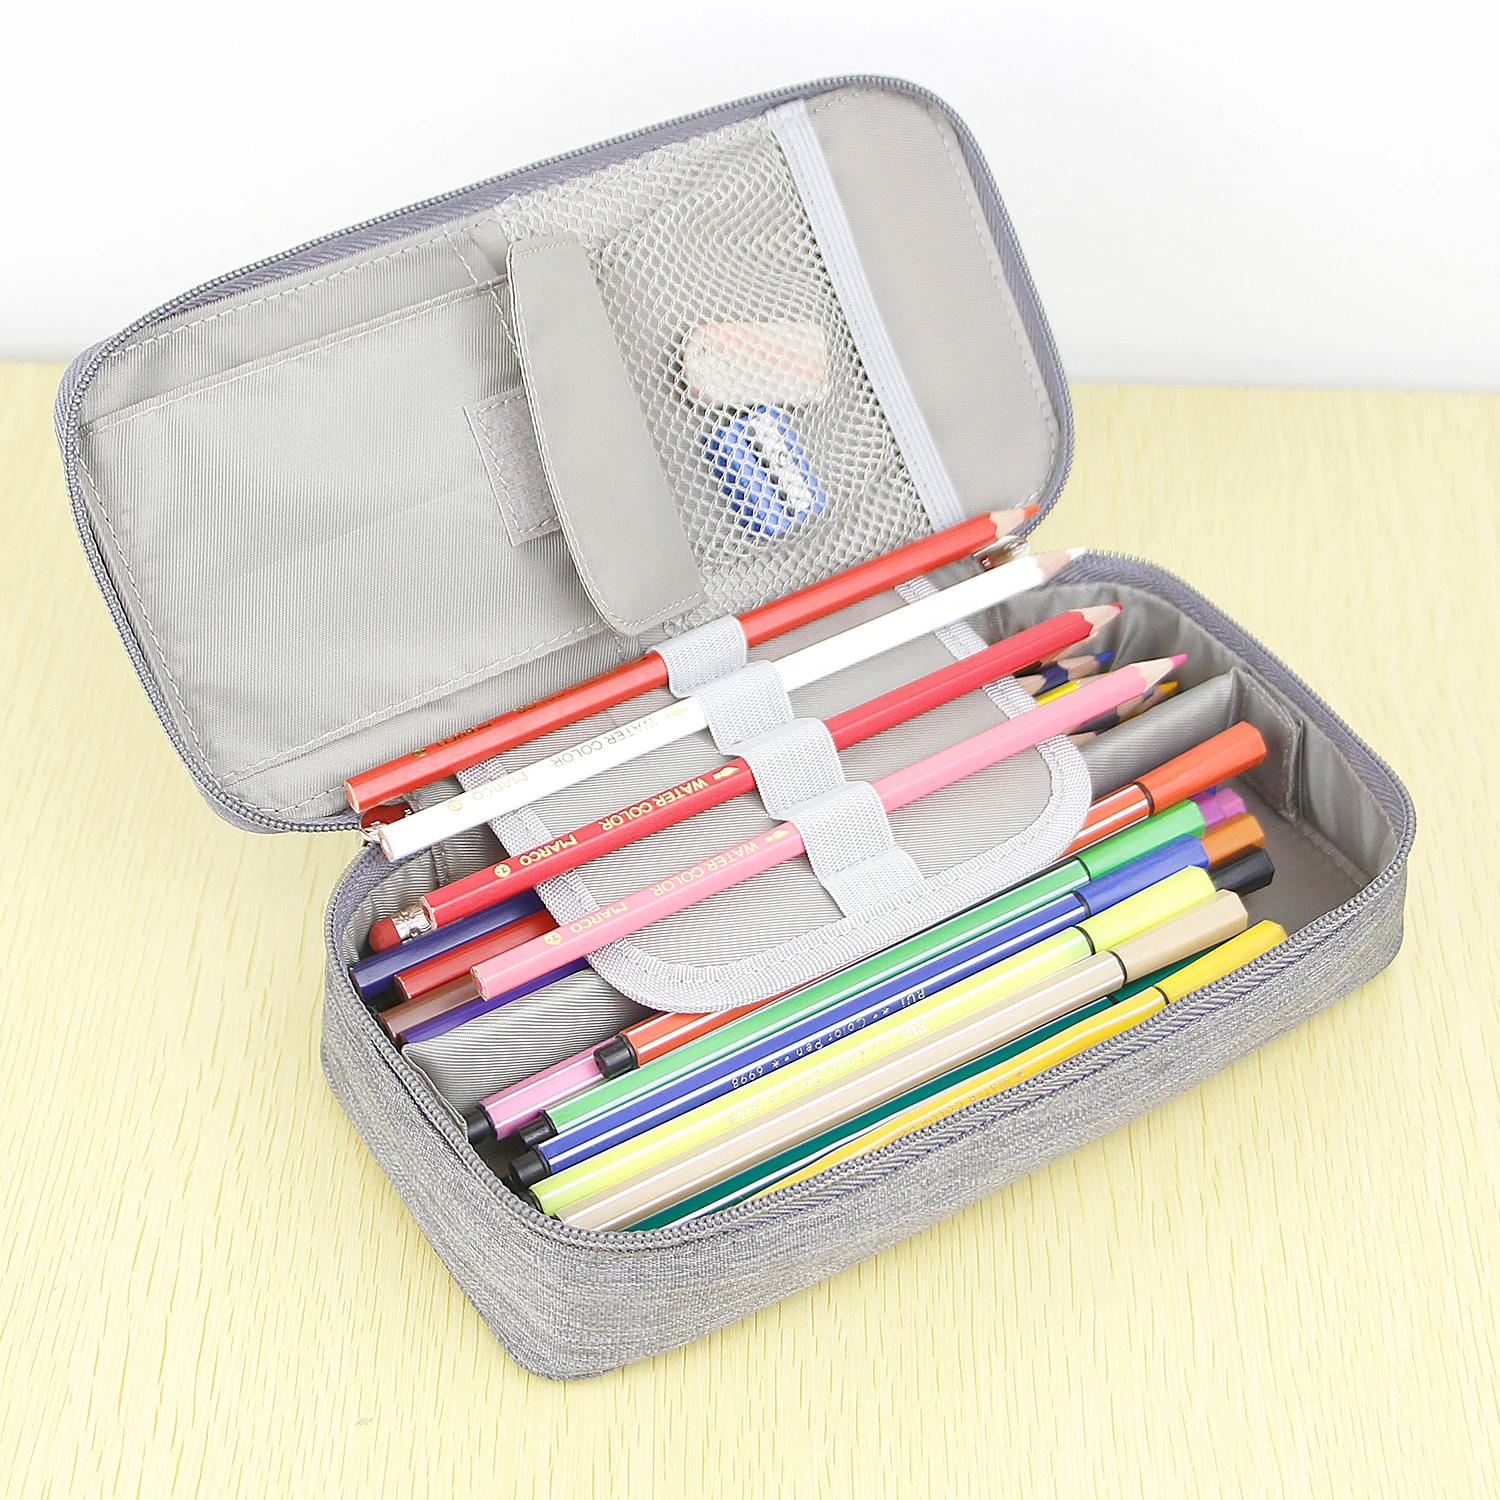 铅笔盒大容量存储牛津布袋袋持有人办公桌笔铅笔铅笔文具组织者铅笔袋